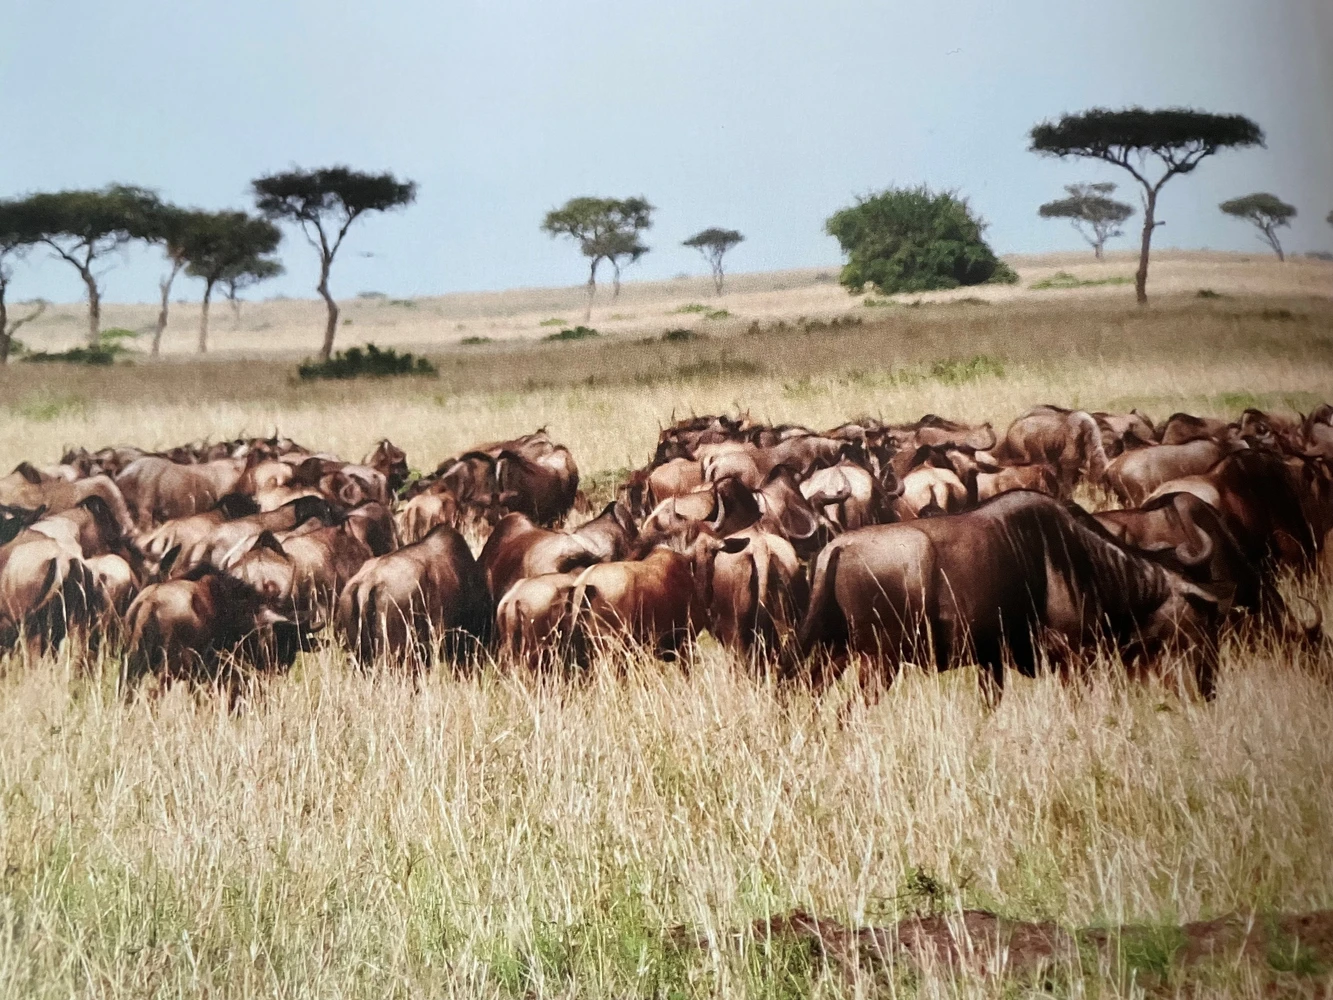 herd of wildebeest on the savannah in Kenya